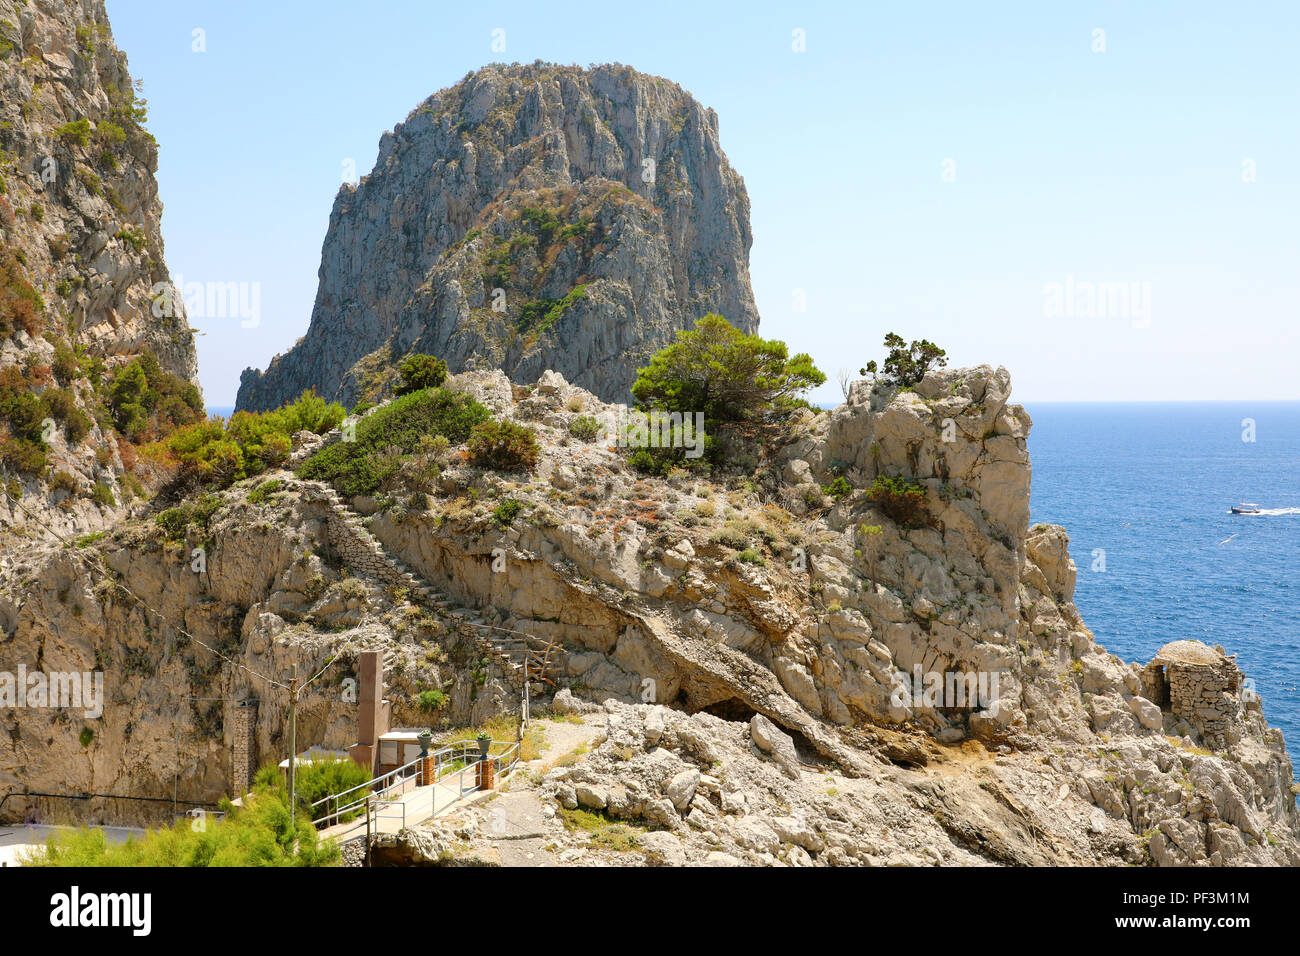 Faraglioni di Capri vista tra i rami degli alberi, Isola di Capri, Italia Foto Stock